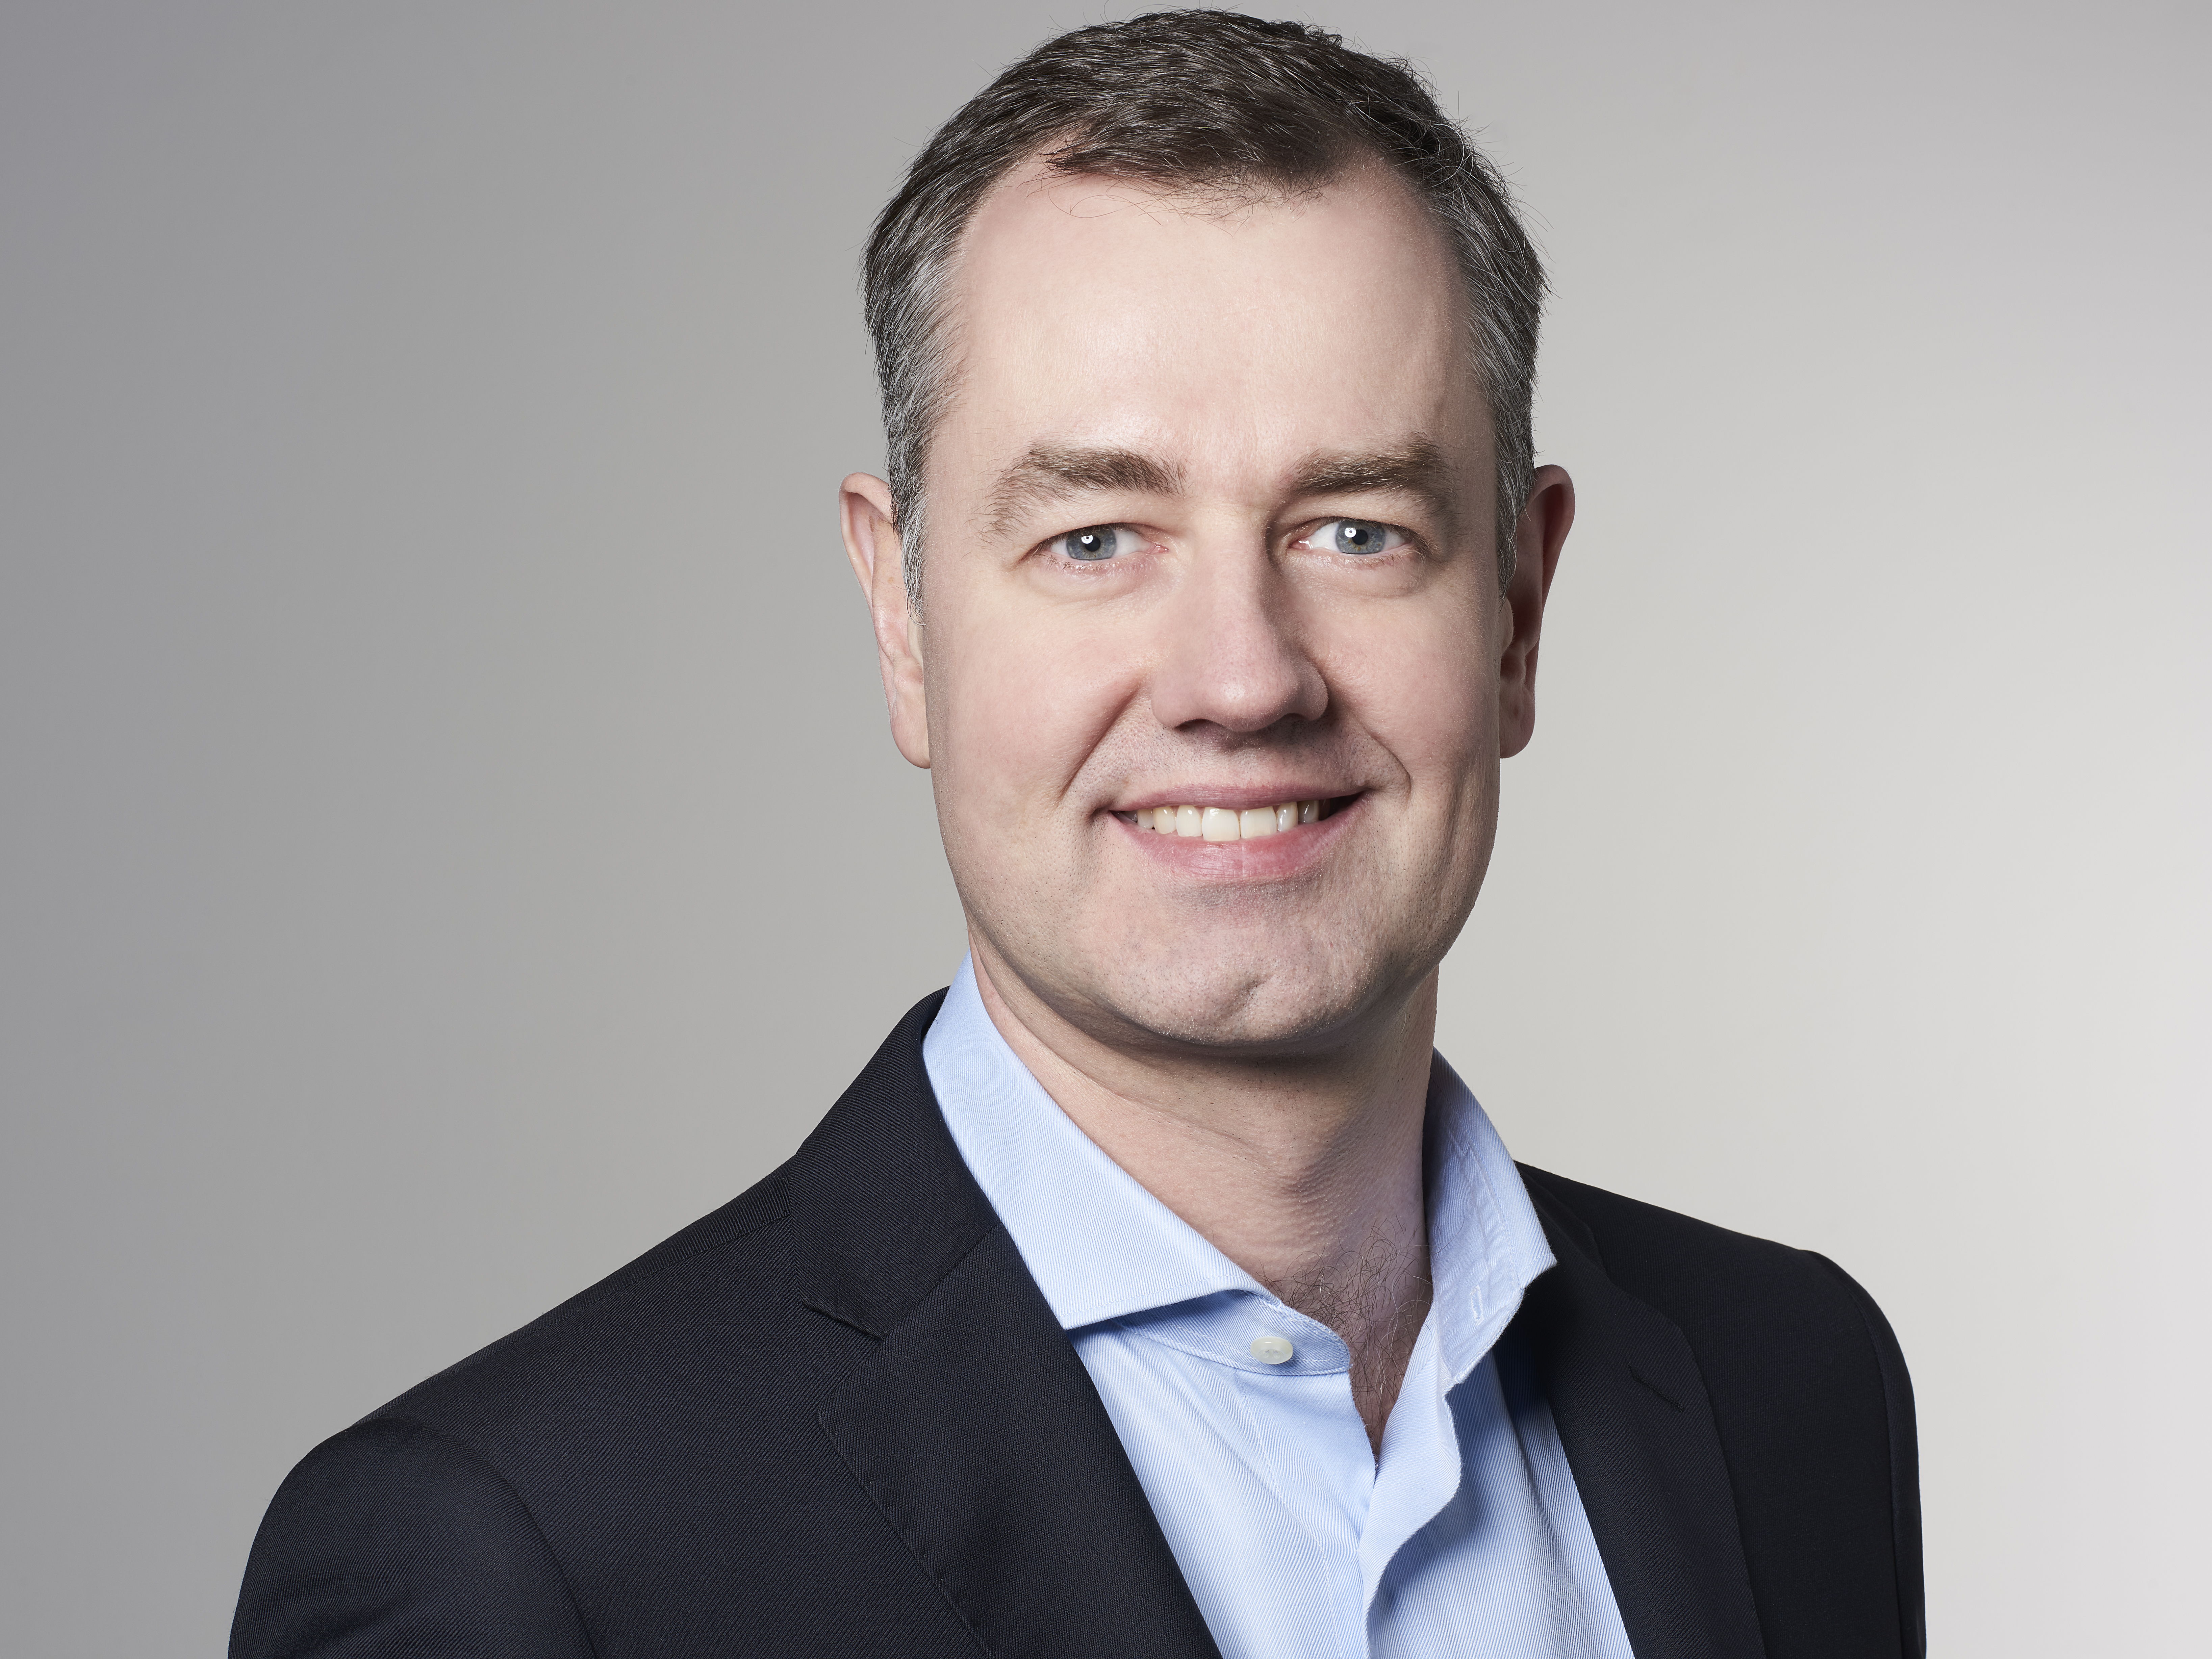  Felix Dony übernimmt die Leitung der Tochtergesellschaft in Zürich